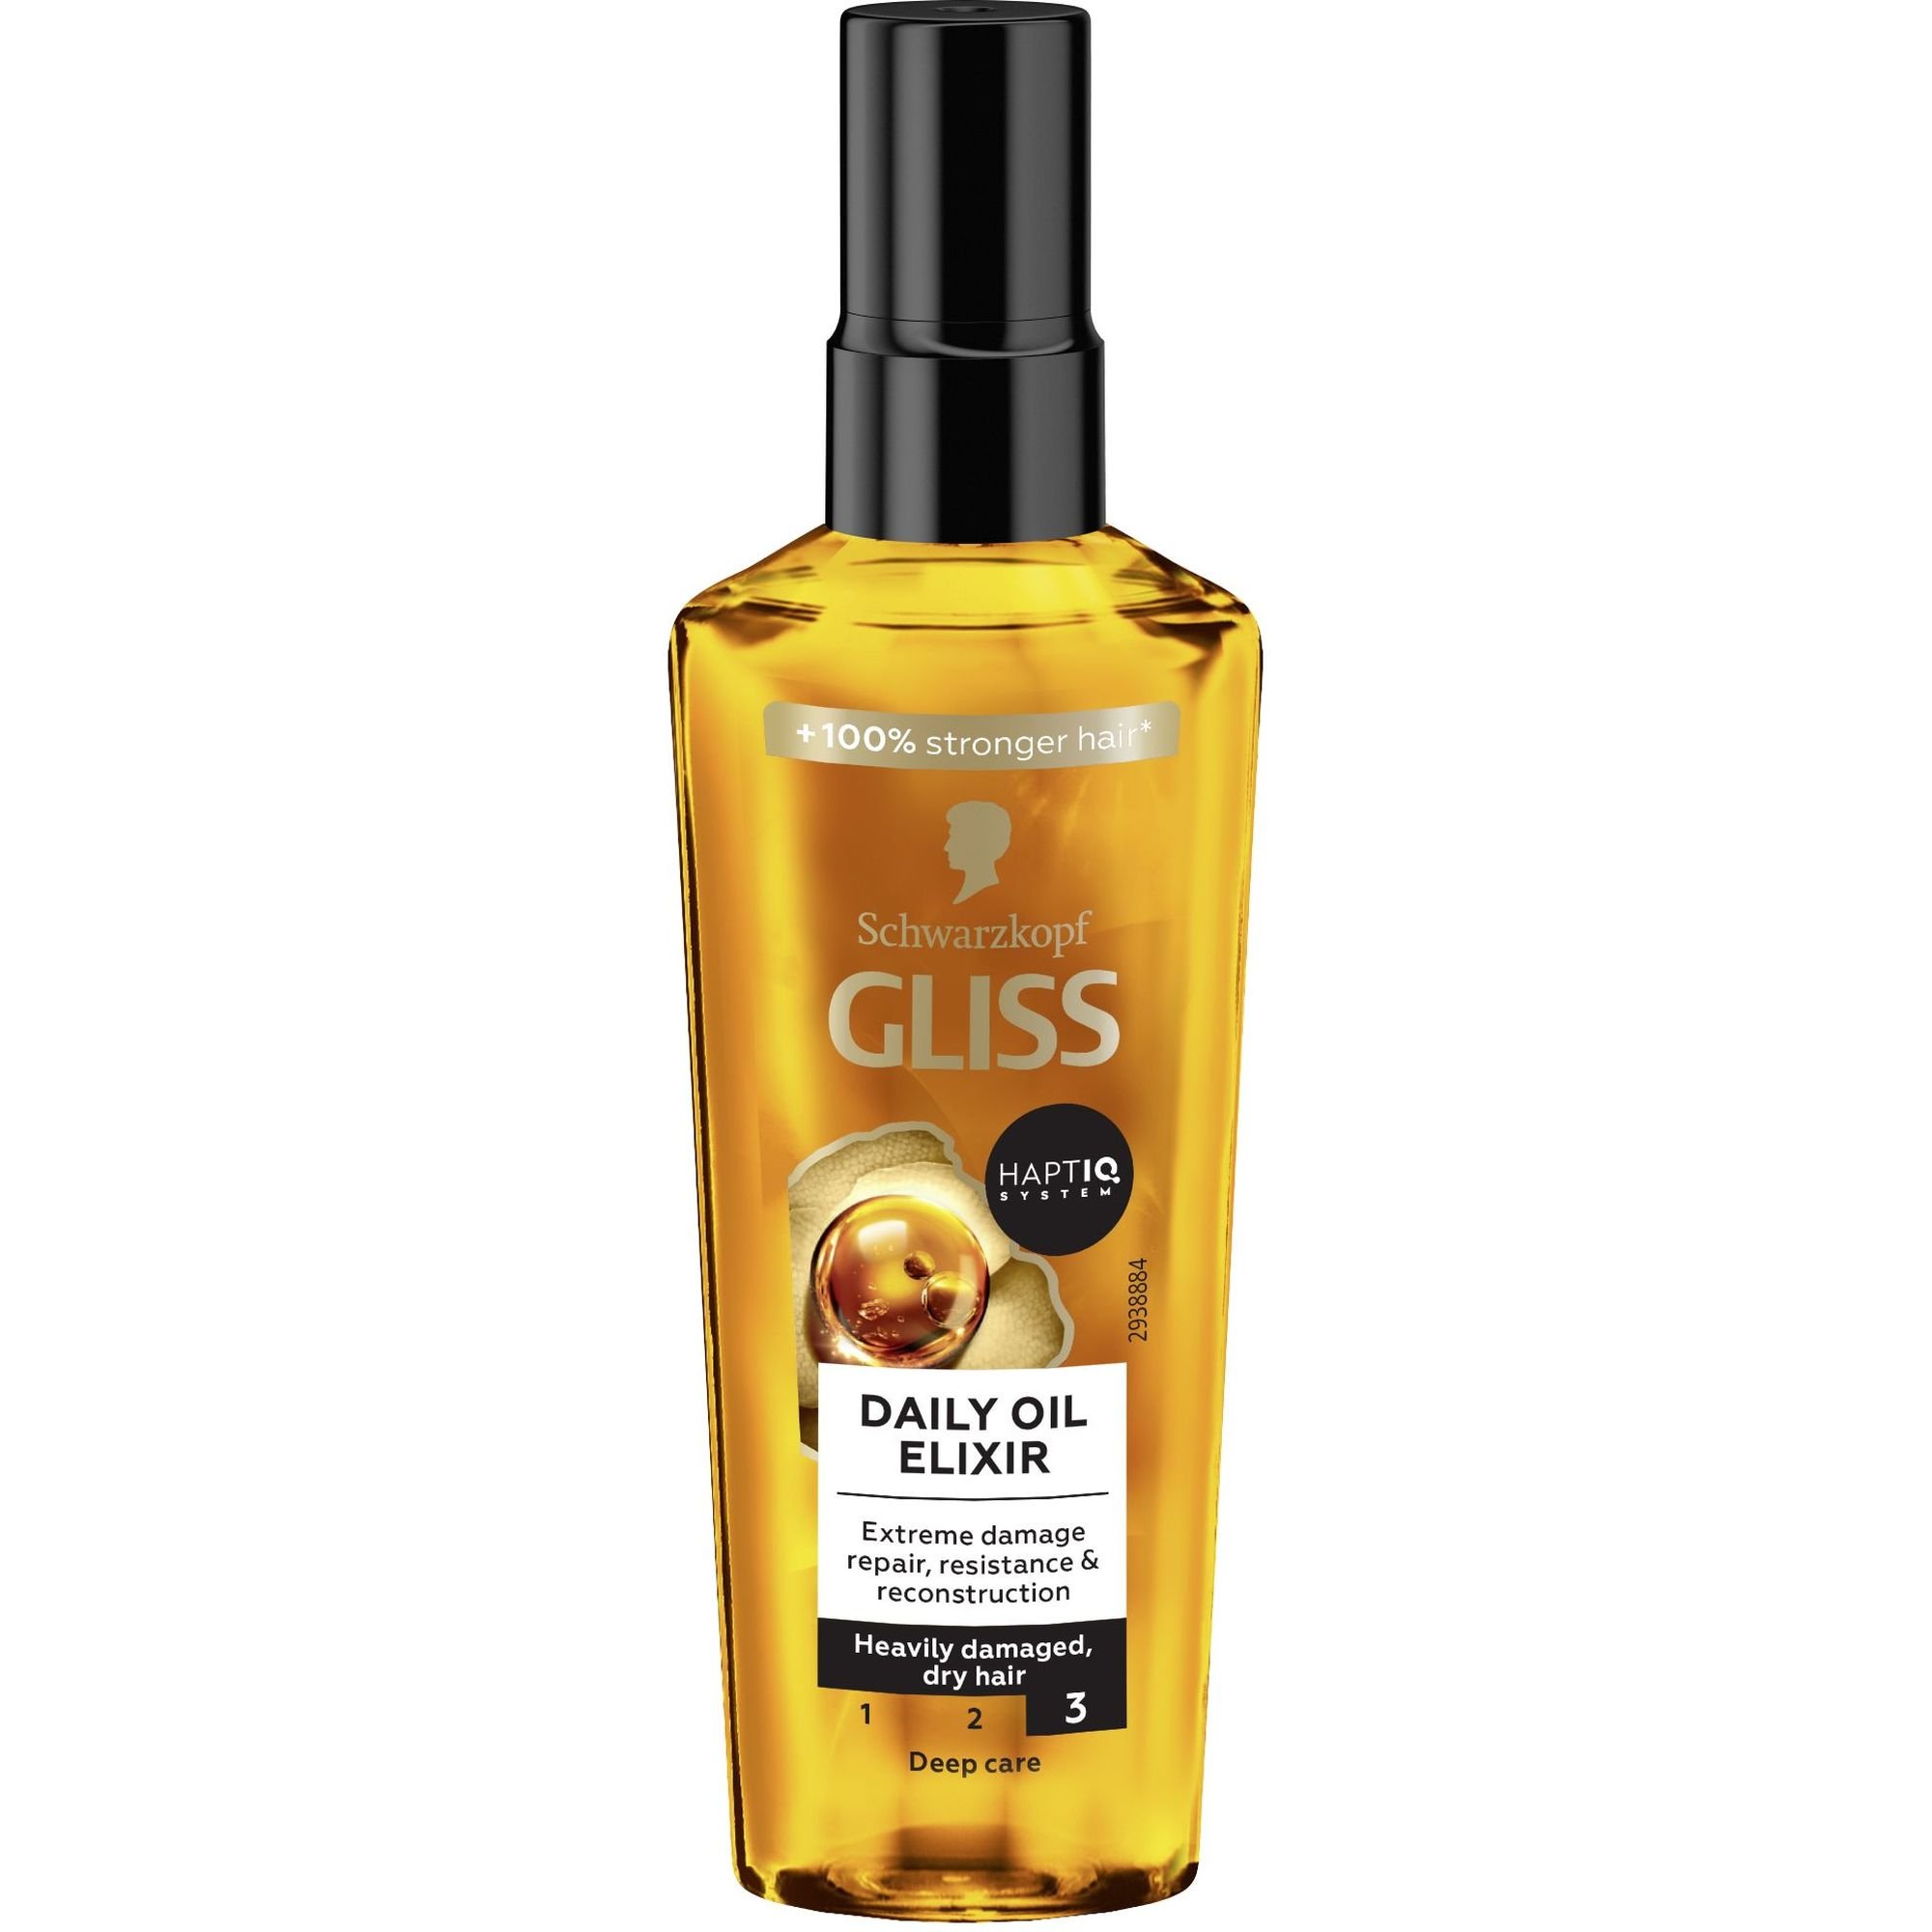 Олія для волосся Gliss Daily Oil Elixir для посіченого волосся 75 мл - фото 1